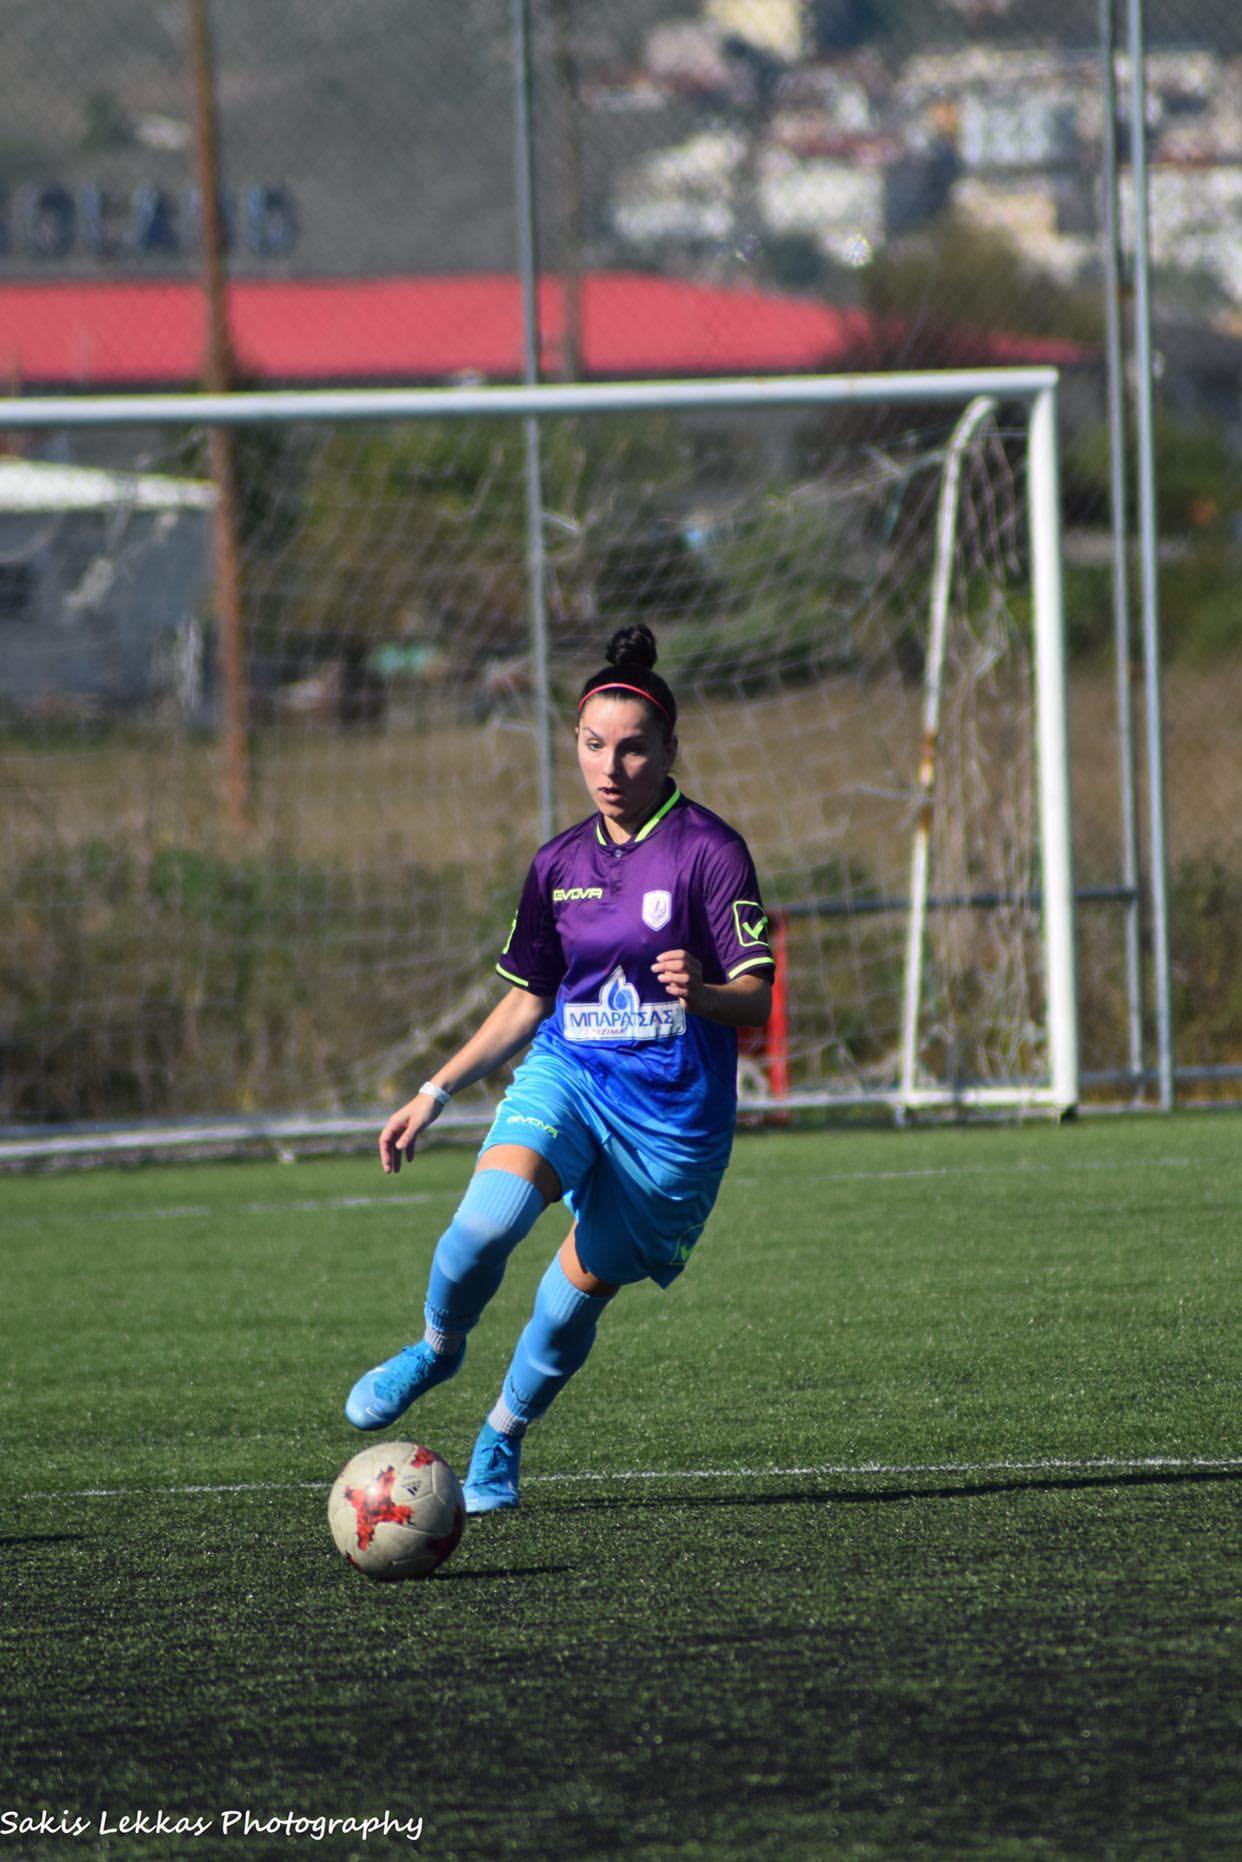 Μαρία Ζαχαράτου : «Το ποδόσφαιρο ήταν η καθημερινότητα μου και μου λείπει περισσότερο από οτιδήποτε»